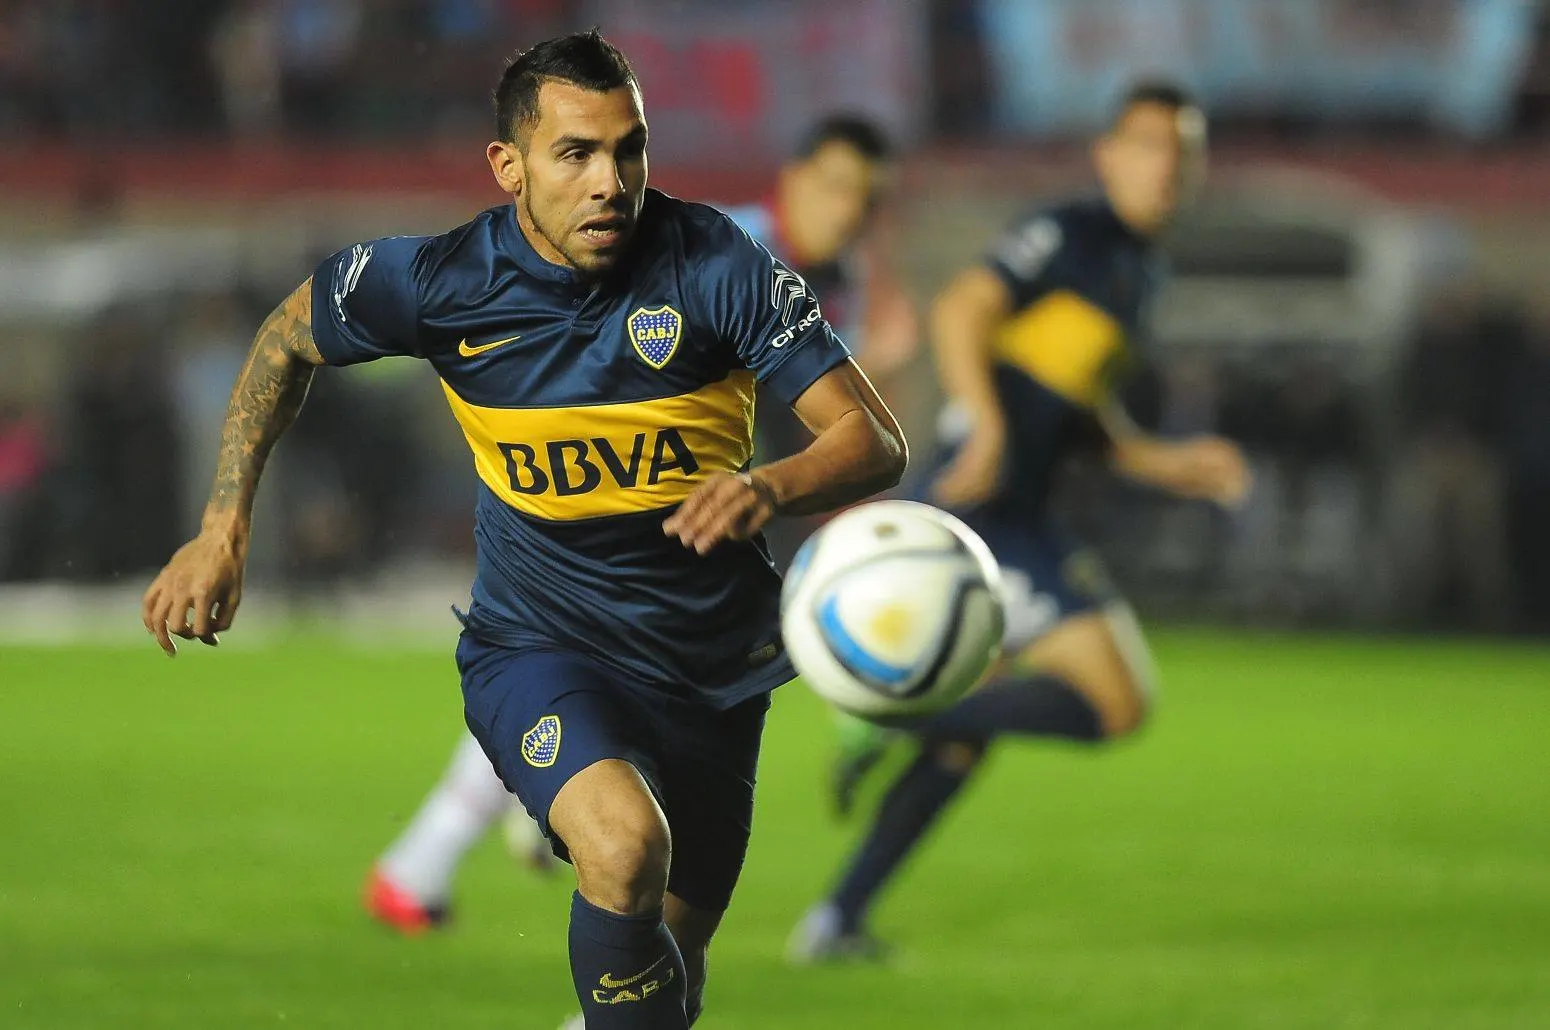 EXCLUSIVO: Sem receber no Boca Juniors, Tevez pode jogar a Libertadores pelo Timão em 2016